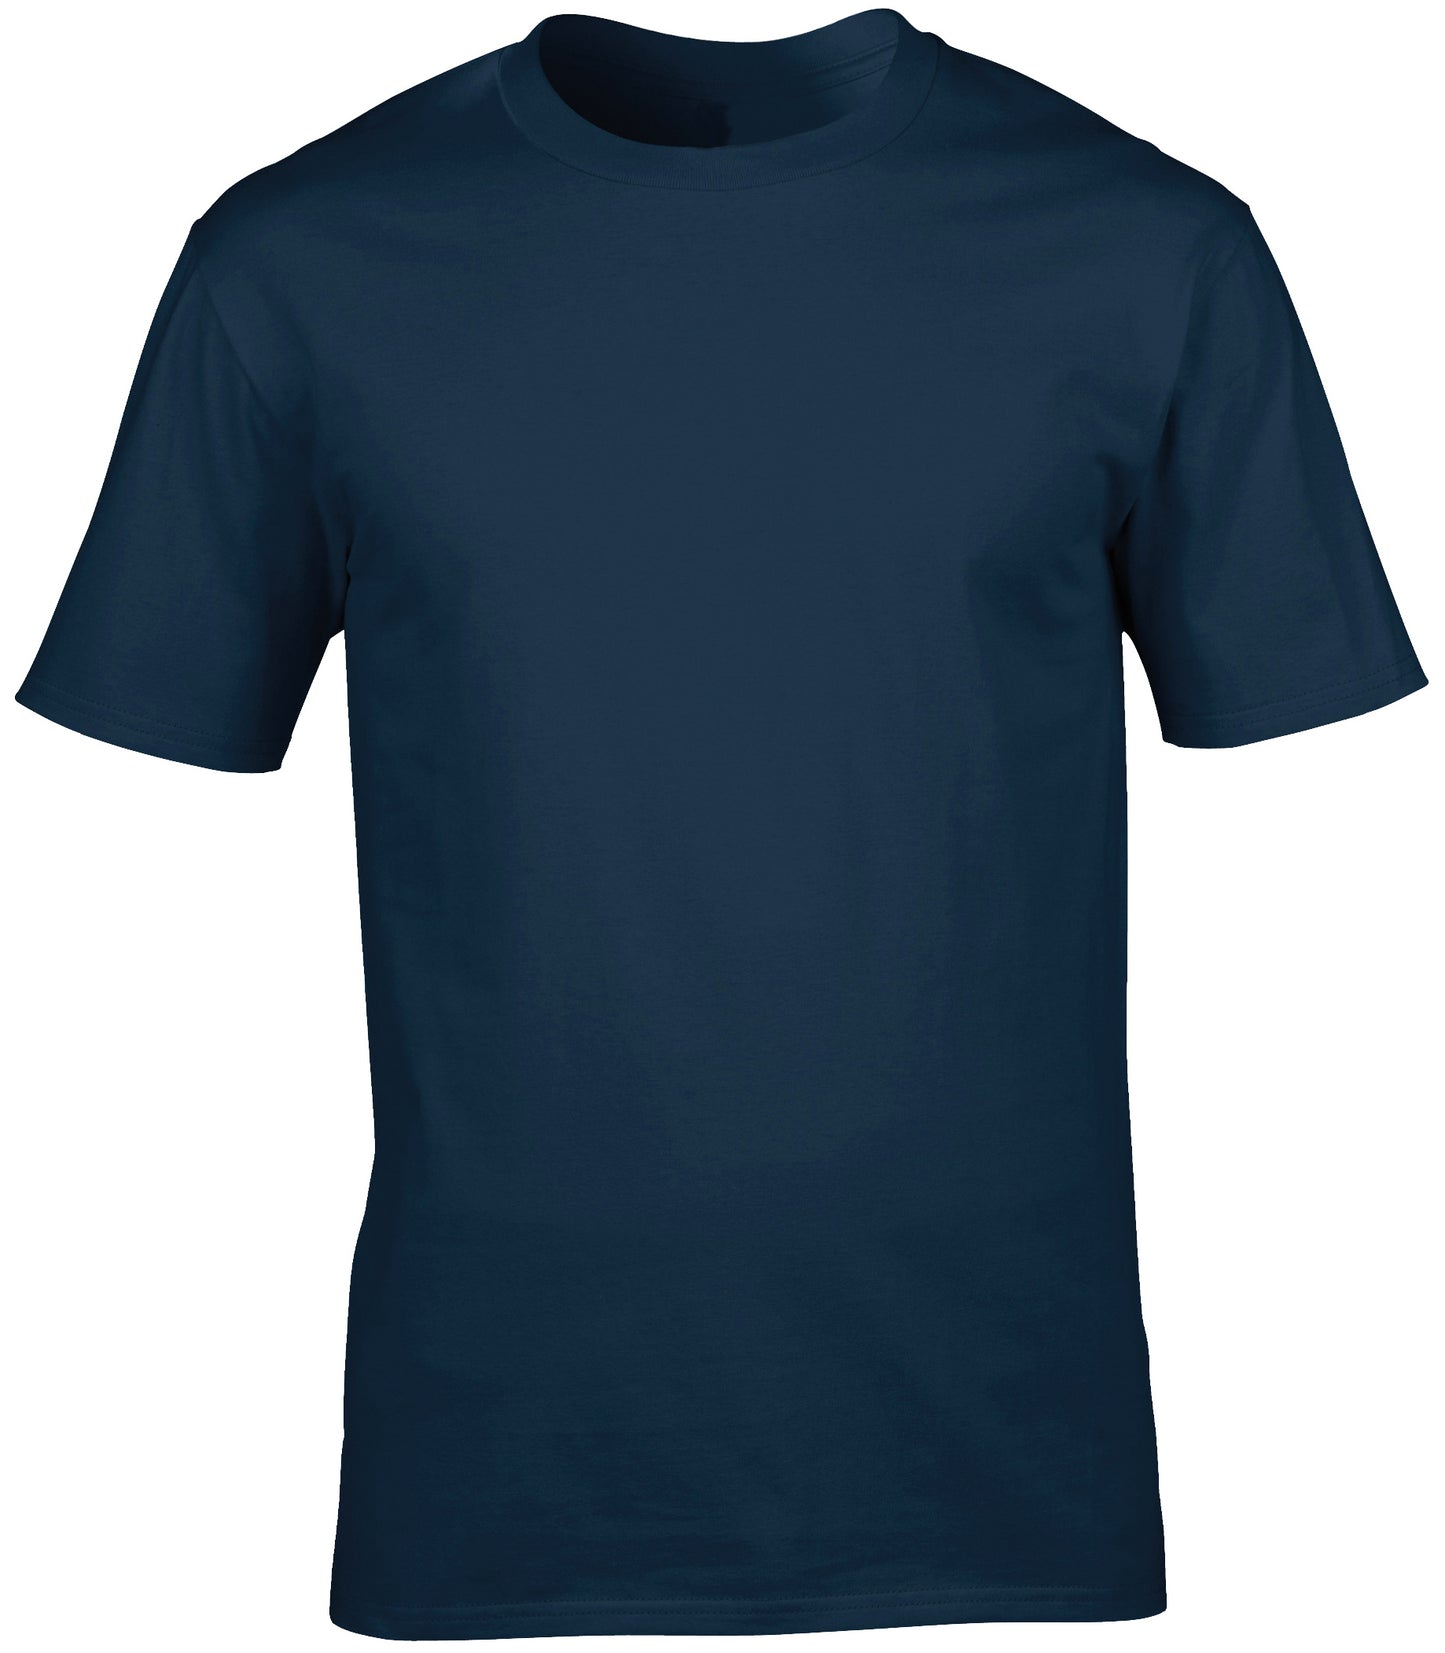 Personalised Image Unisex T-shirt